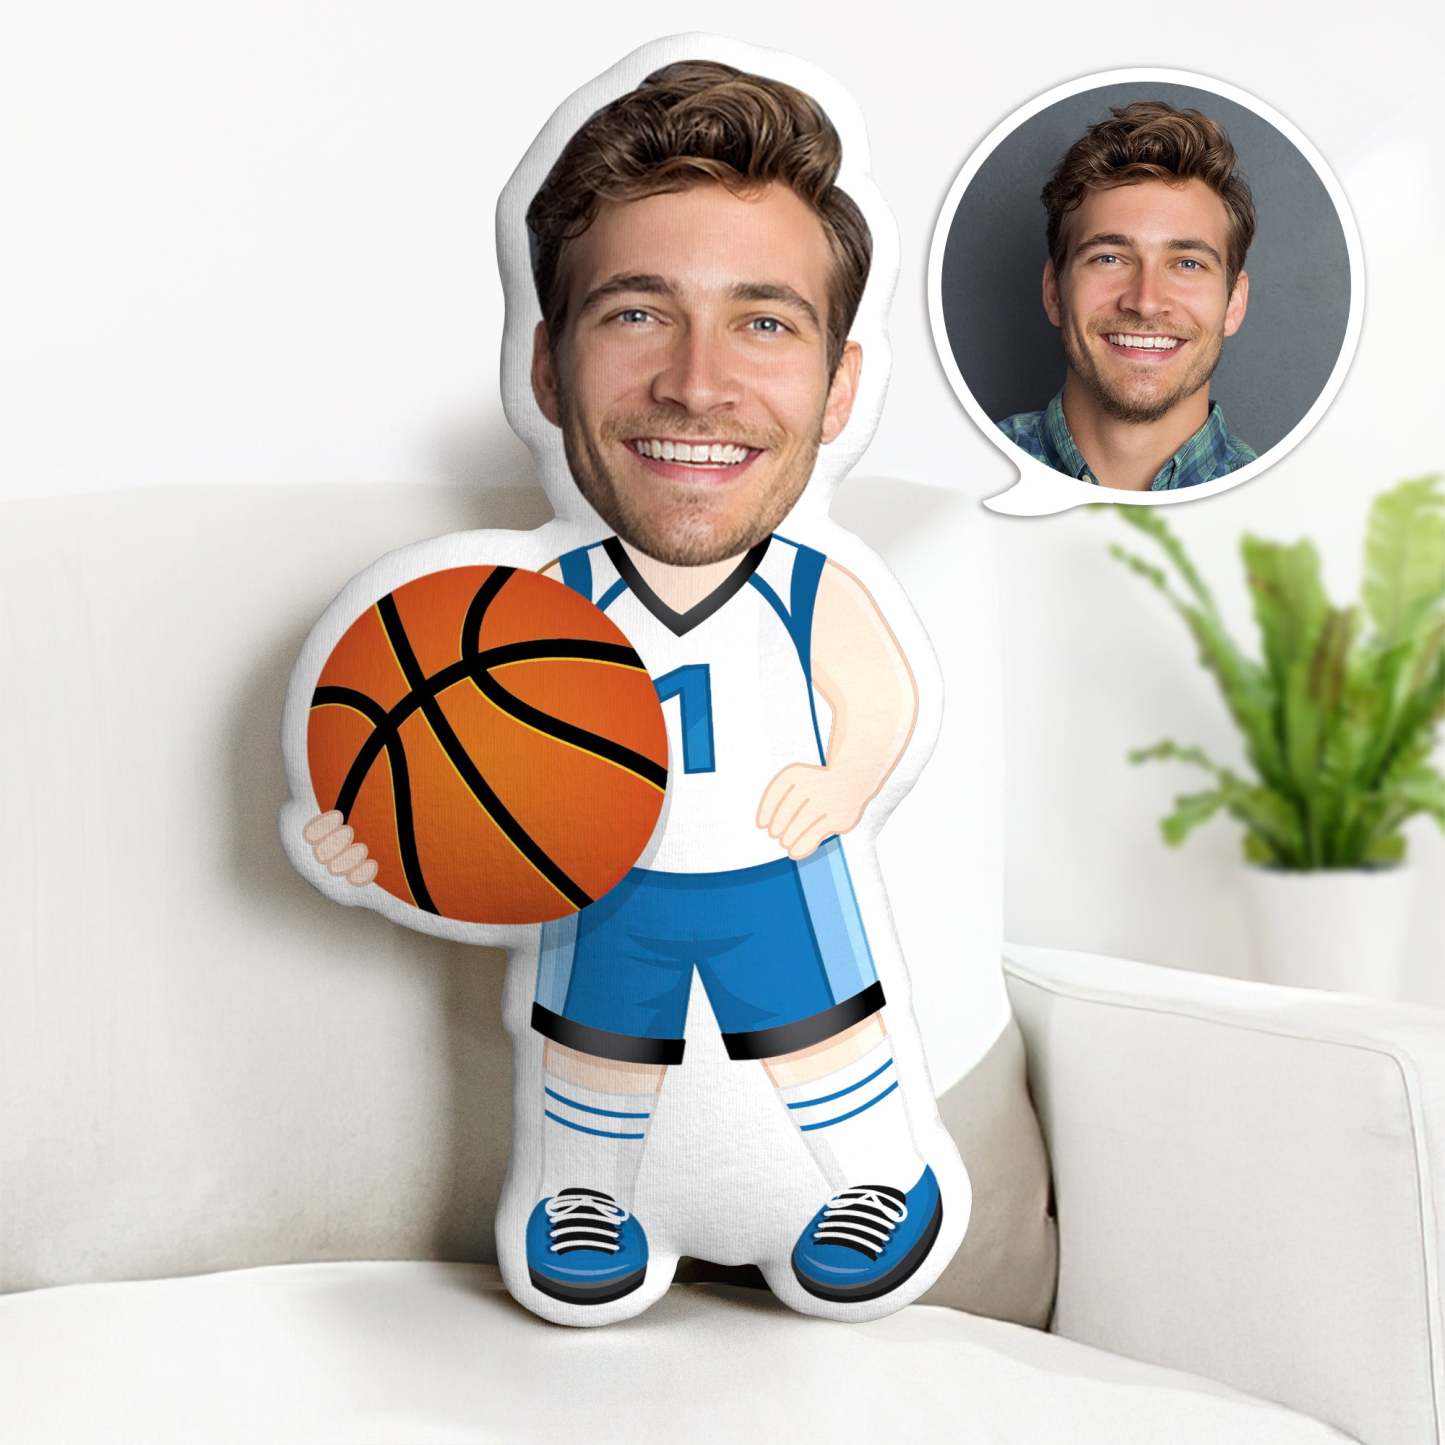 Der Kundenspezifische Vatertags-minime-wurfs-kissen Personalisierter Basketball-spieler Minime-wurfs-kissen - dephotoblanket